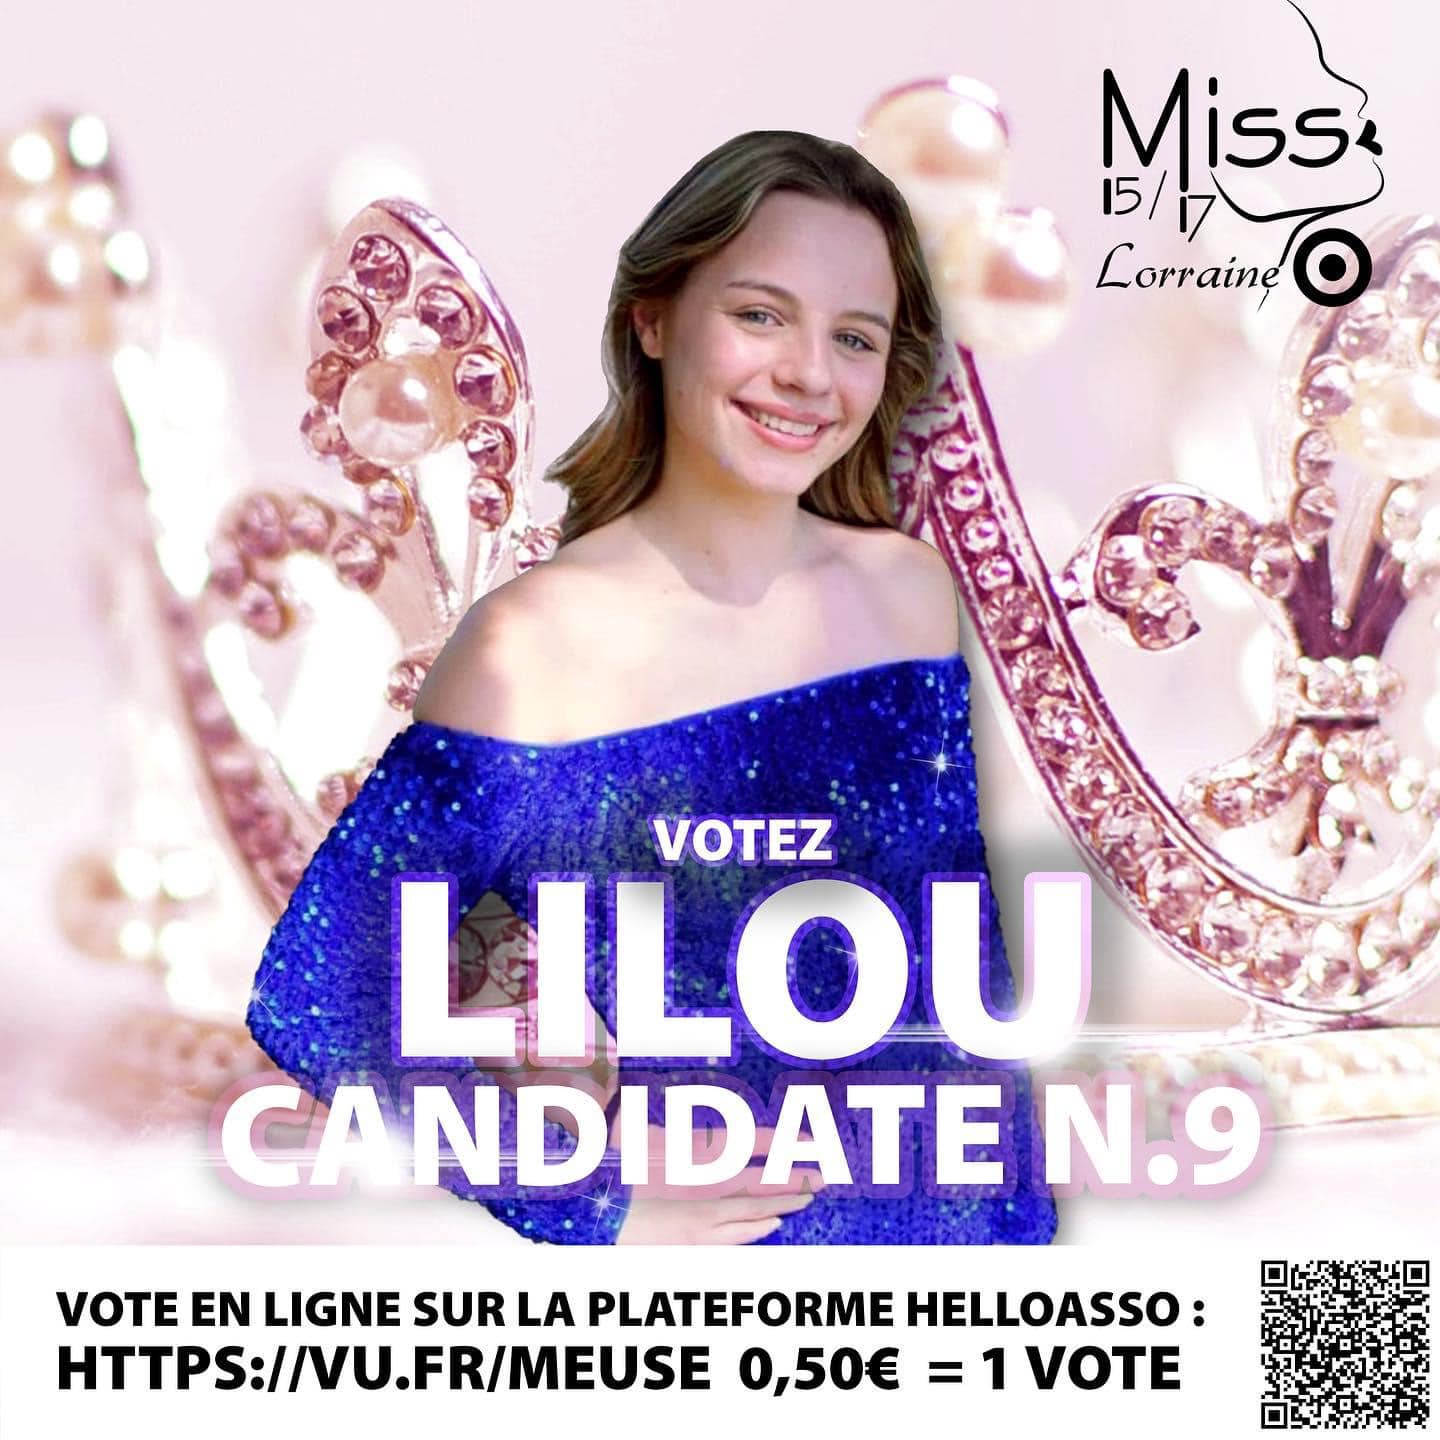 Candidates_Vosgiennes_Miss_15-17_Lorraine (8)